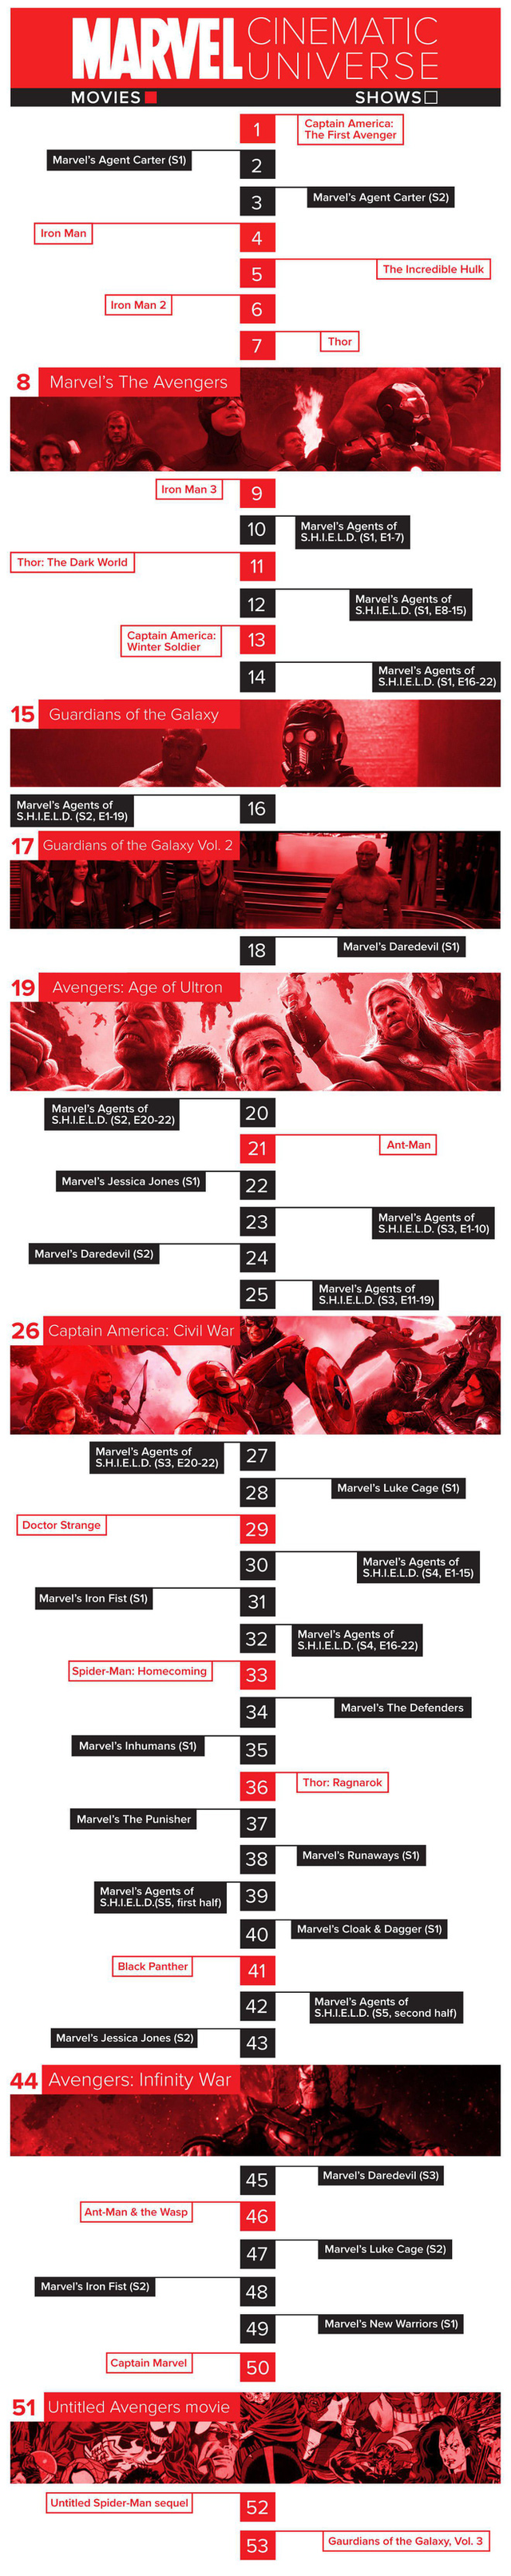 Trình tự đúng nhất để xem lại các phim trong vũ trụ điện ảnh Marvel trước khi Avengers: Infinity War ra rạp - Ảnh 4.